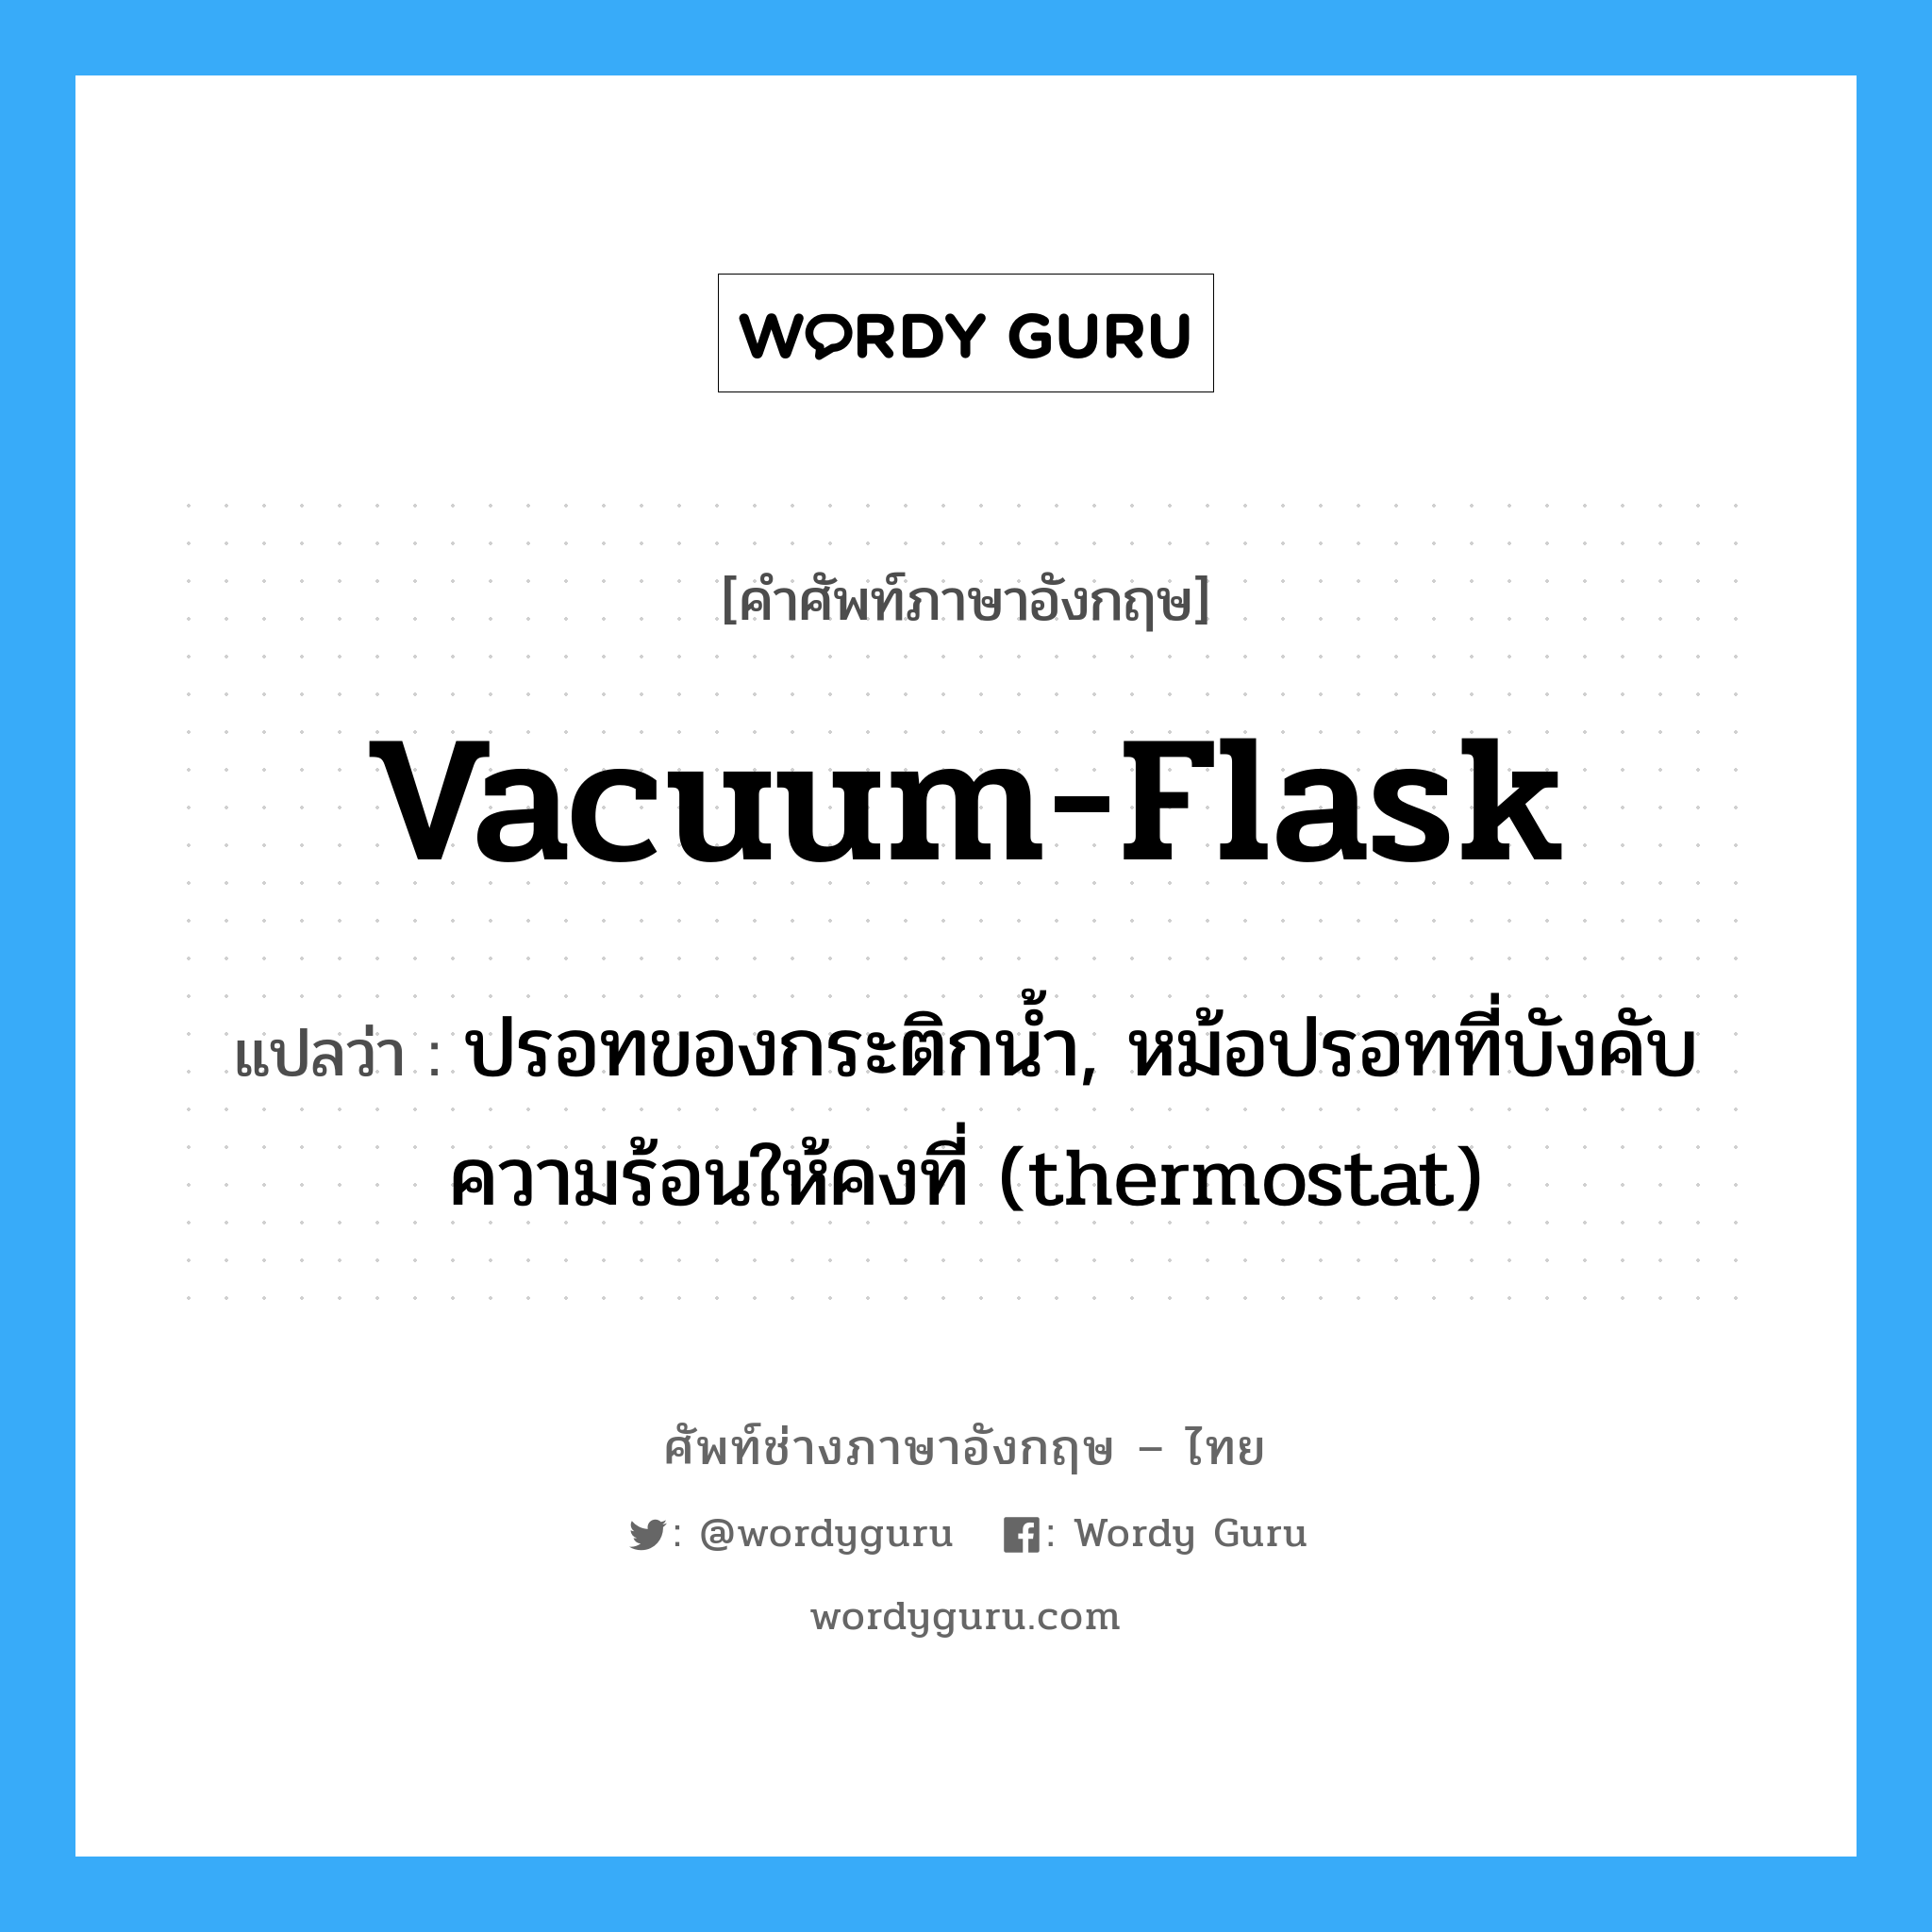 vacuum-flask แปลว่า?, คำศัพท์ช่างภาษาอังกฤษ - ไทย vacuum-flask คำศัพท์ภาษาอังกฤษ vacuum-flask แปลว่า ปรอทของกระติกน้ำ, หม้อปรอทที่บังคับความร้อนให้คงที่ (thermostat)